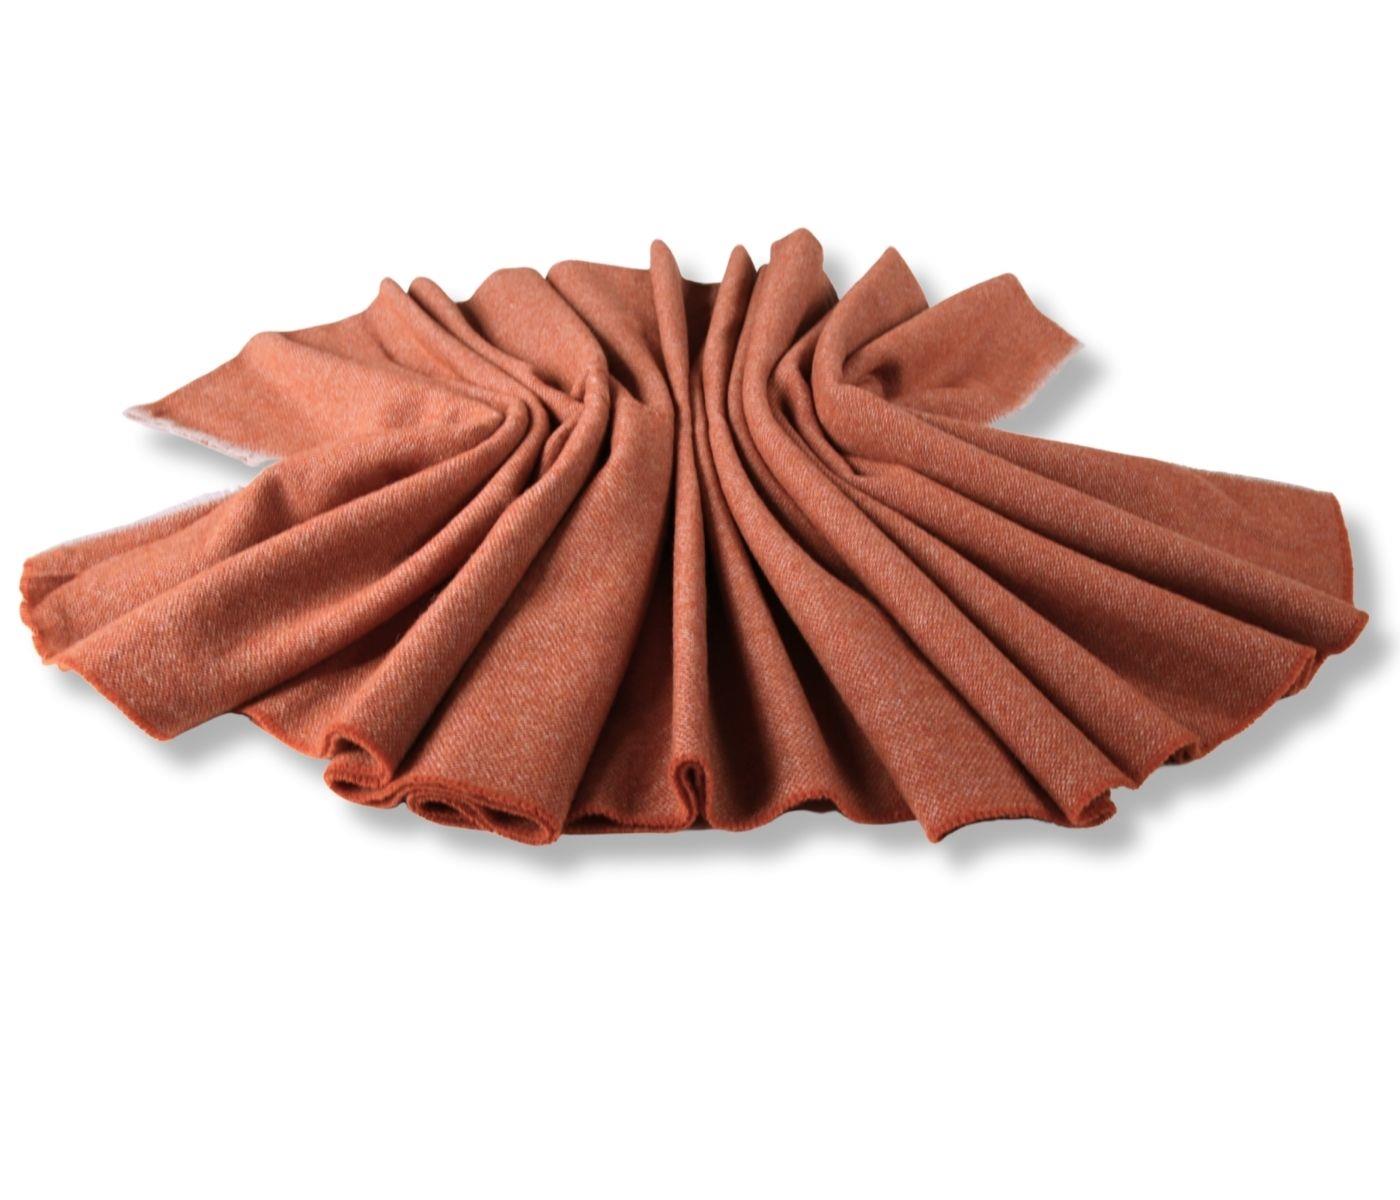 Eagle Products Wolldecke aus 100% Schurwolle in orange 130 x 200 cm